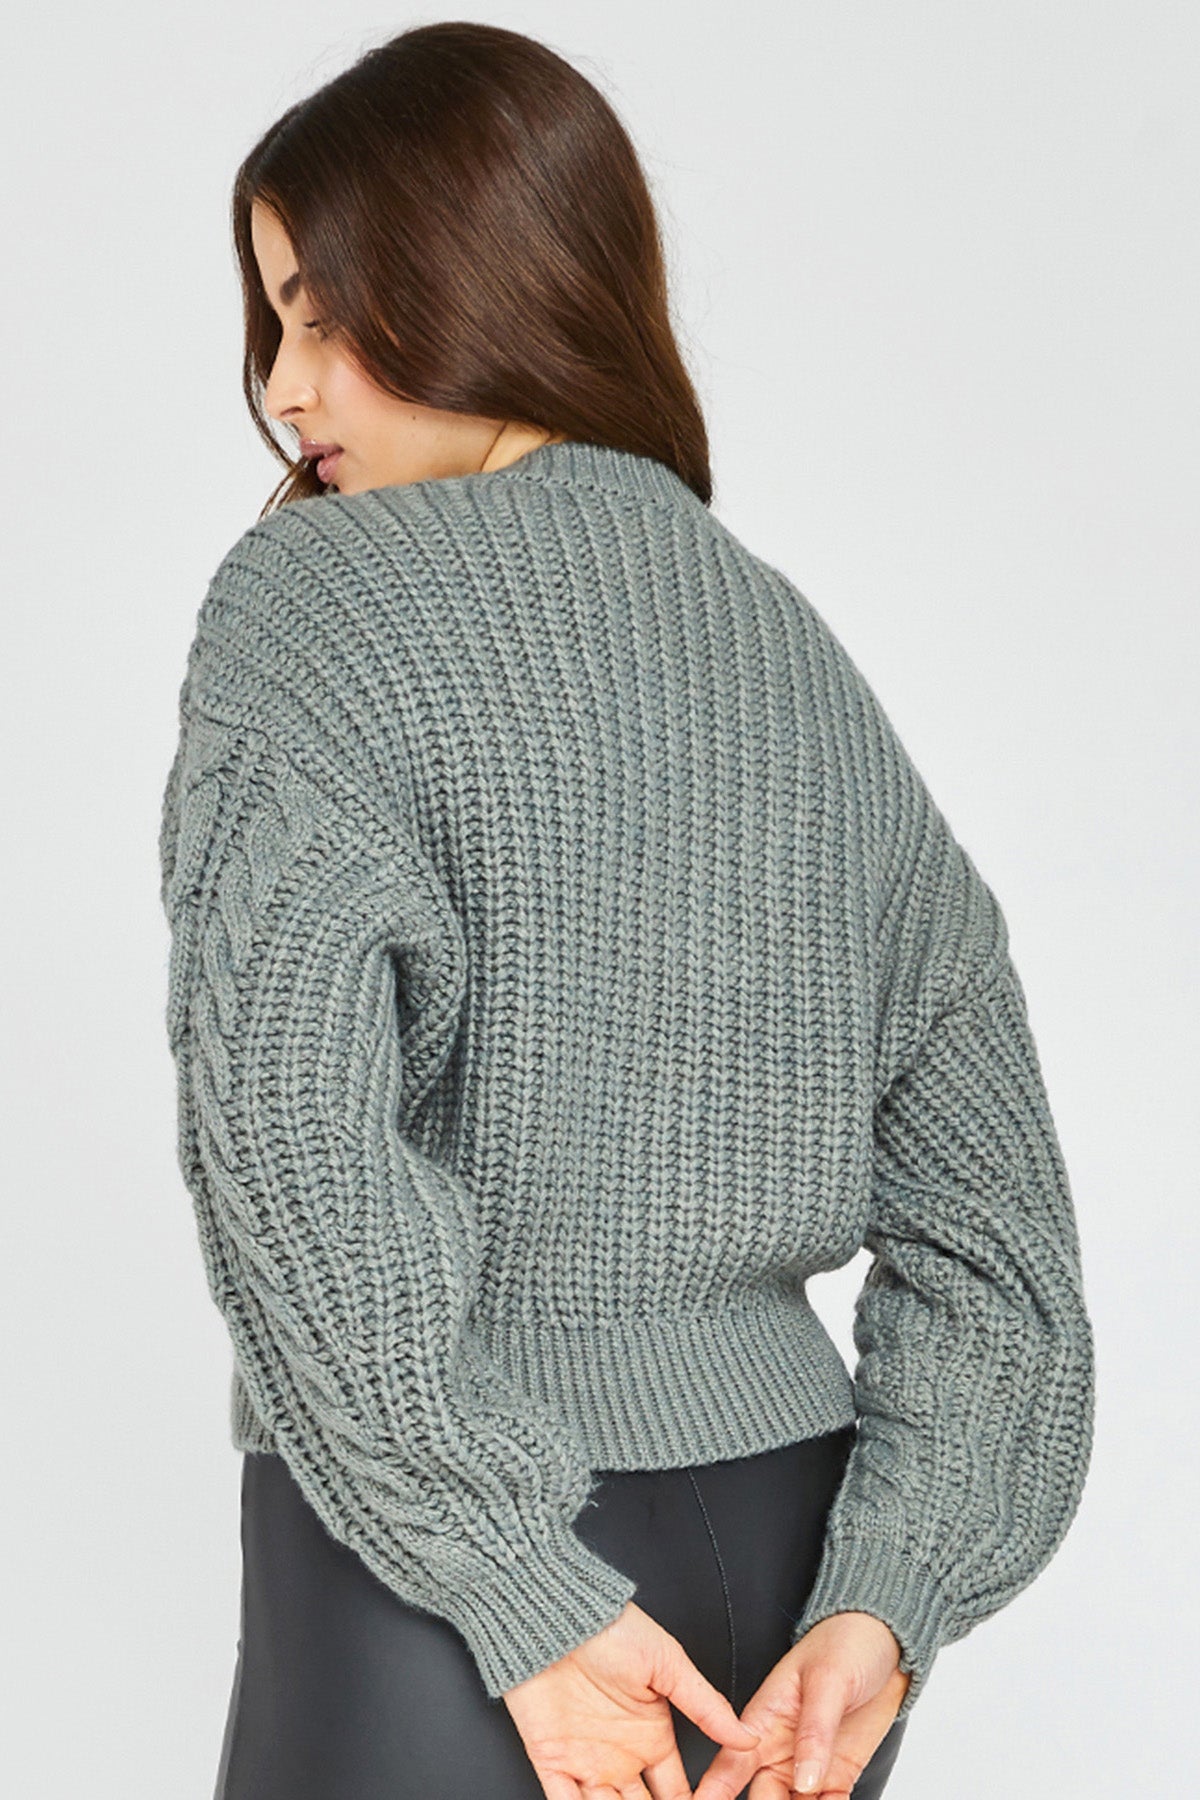 Sloane V-neck Sweater - Sage